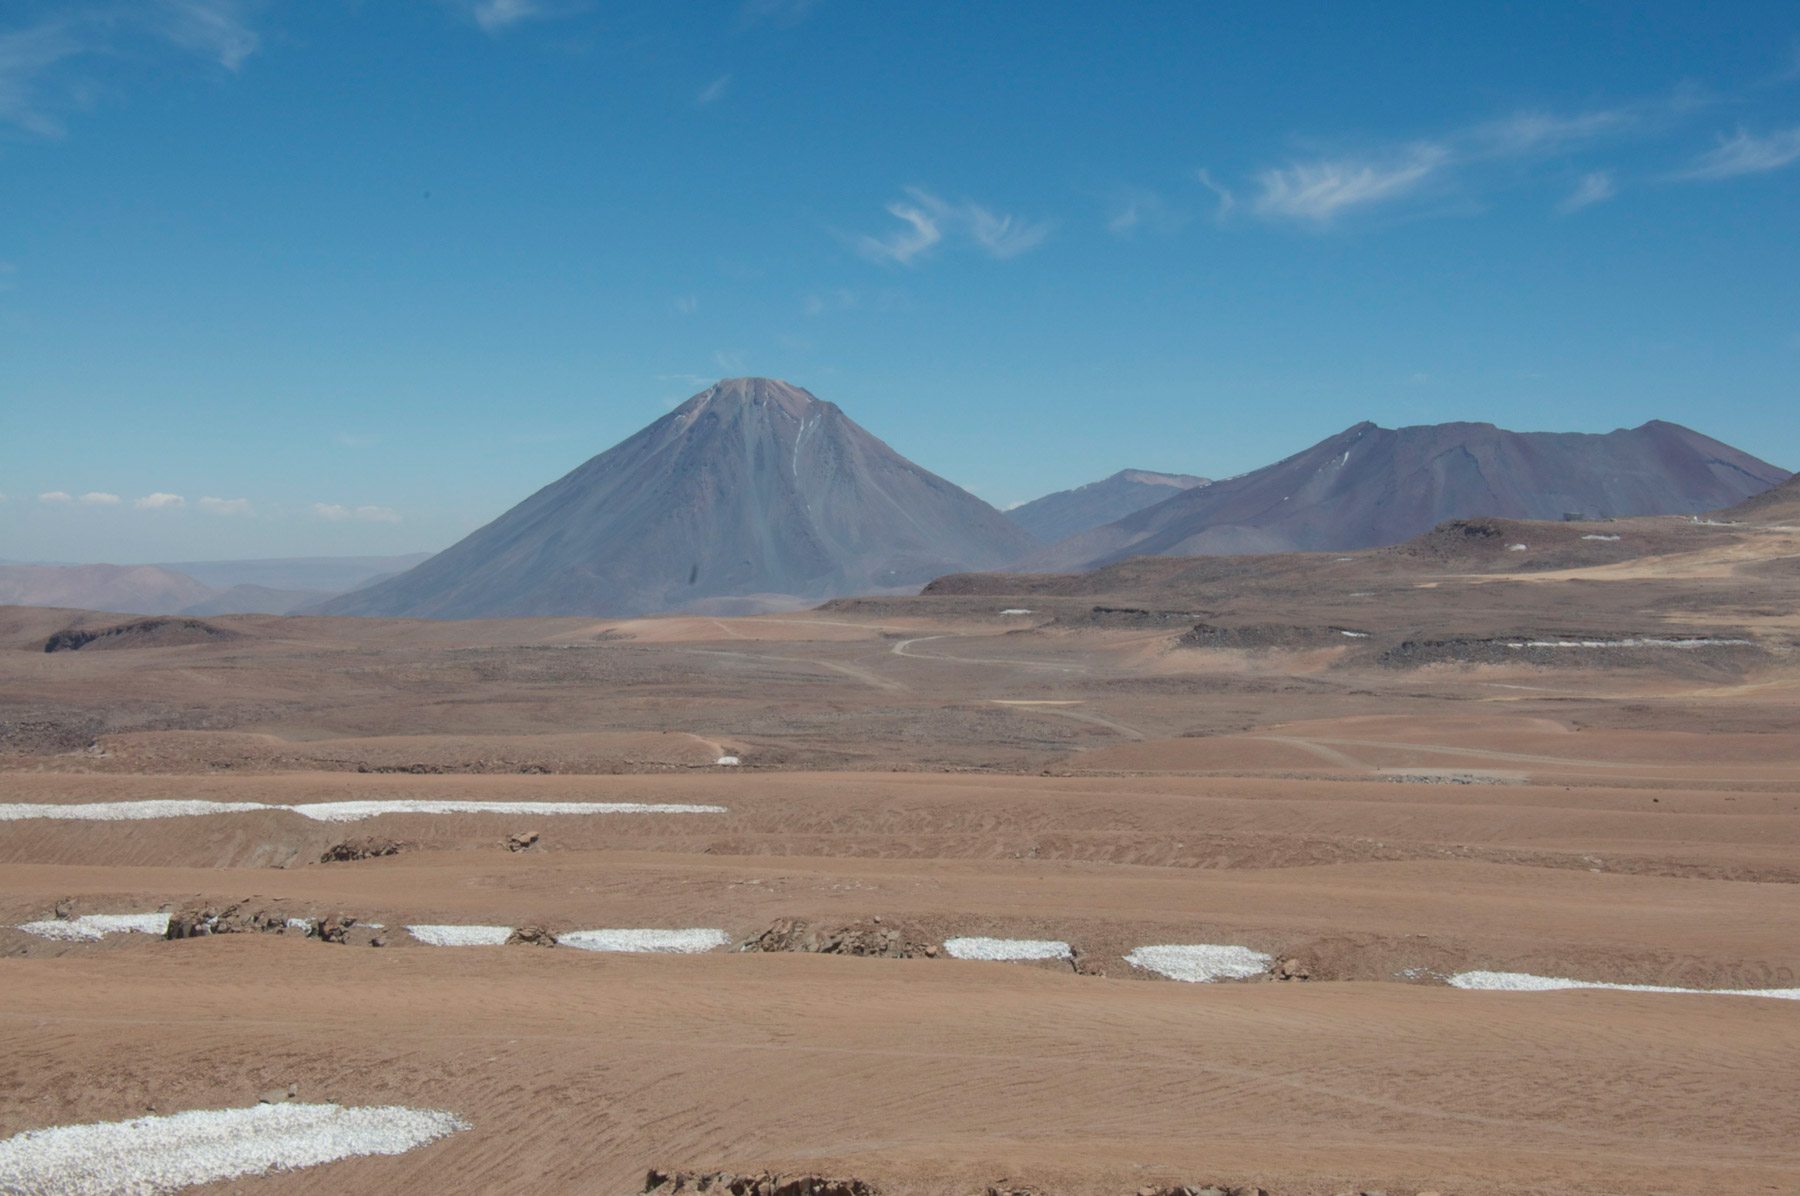 Le Chili est un pays assez exceptionnel, par sa forme longiligne et sa diversité. S'y trouve notamment le désert aride d'Atacama, à plusieurs milliers de mètres d'altitude, clairsemé de volcans gigantesques aujourd'hui éteints pour la plupart. © Rémy Decourt, Futura-Sciences